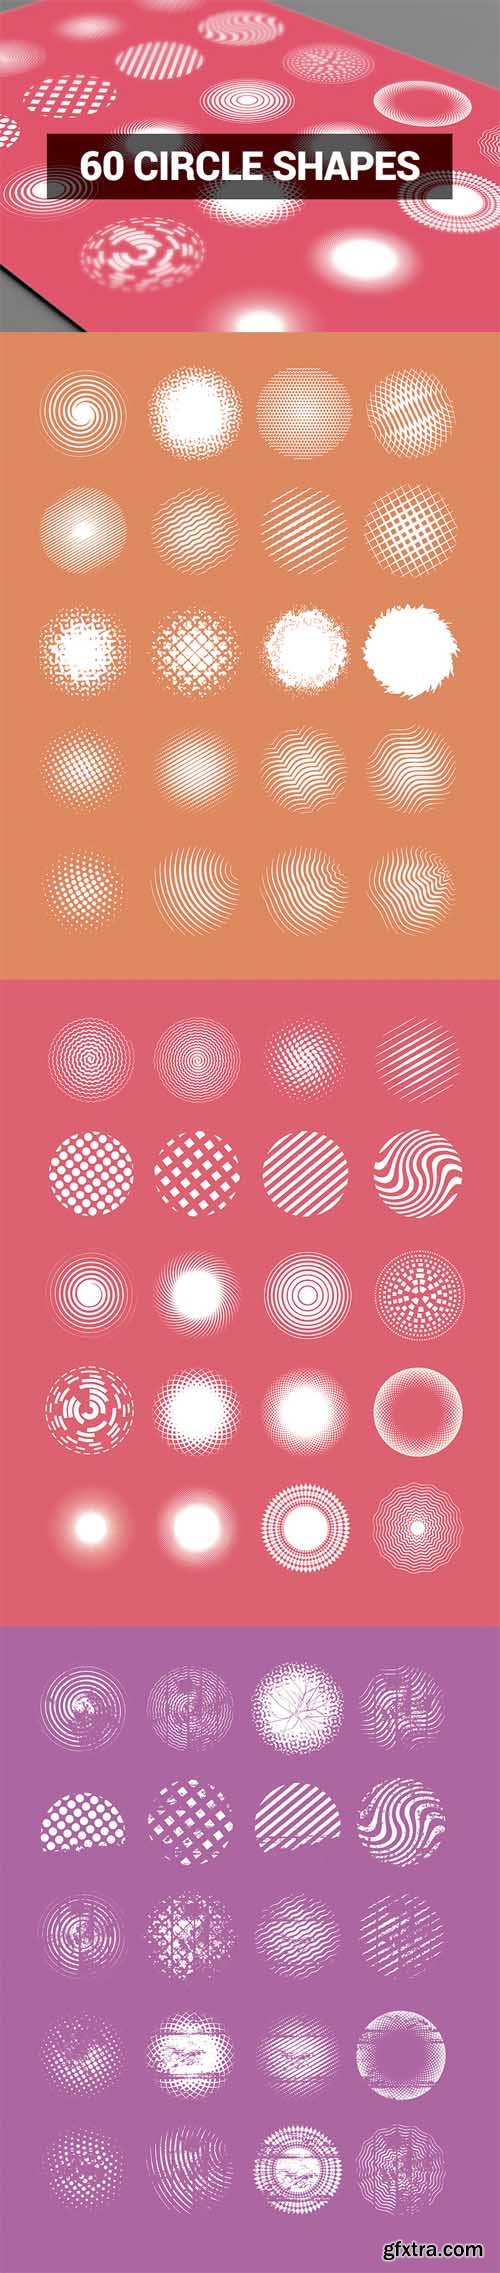 Abstract Shapes - 60 Circle Shapes